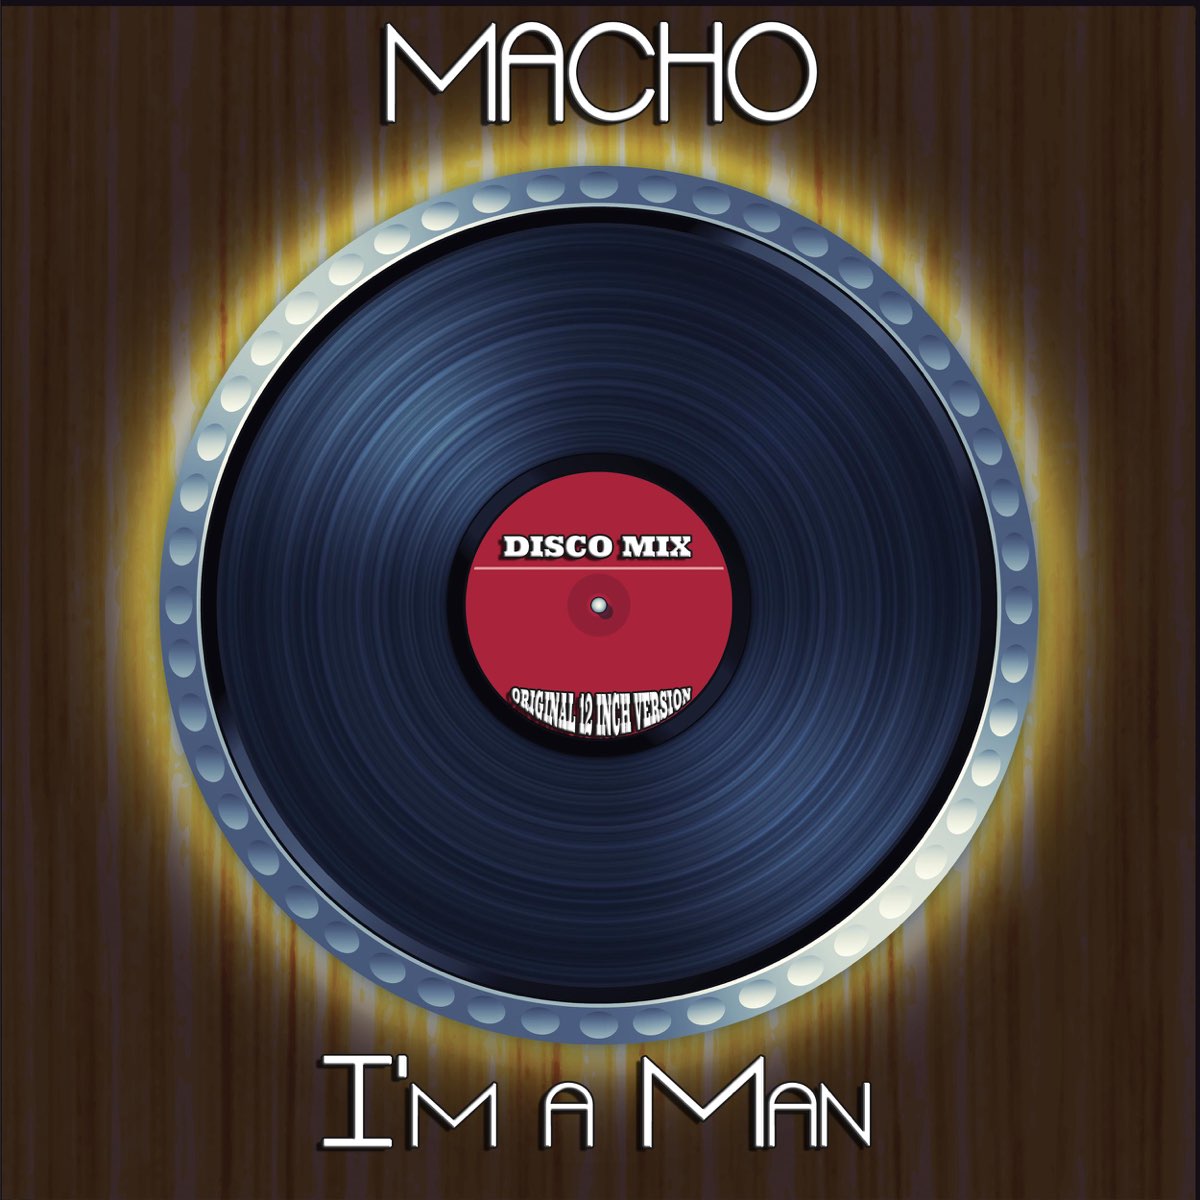 I'm a Man (Disco Mix - Original 12 Inch Version) par Macho sur Apple Music